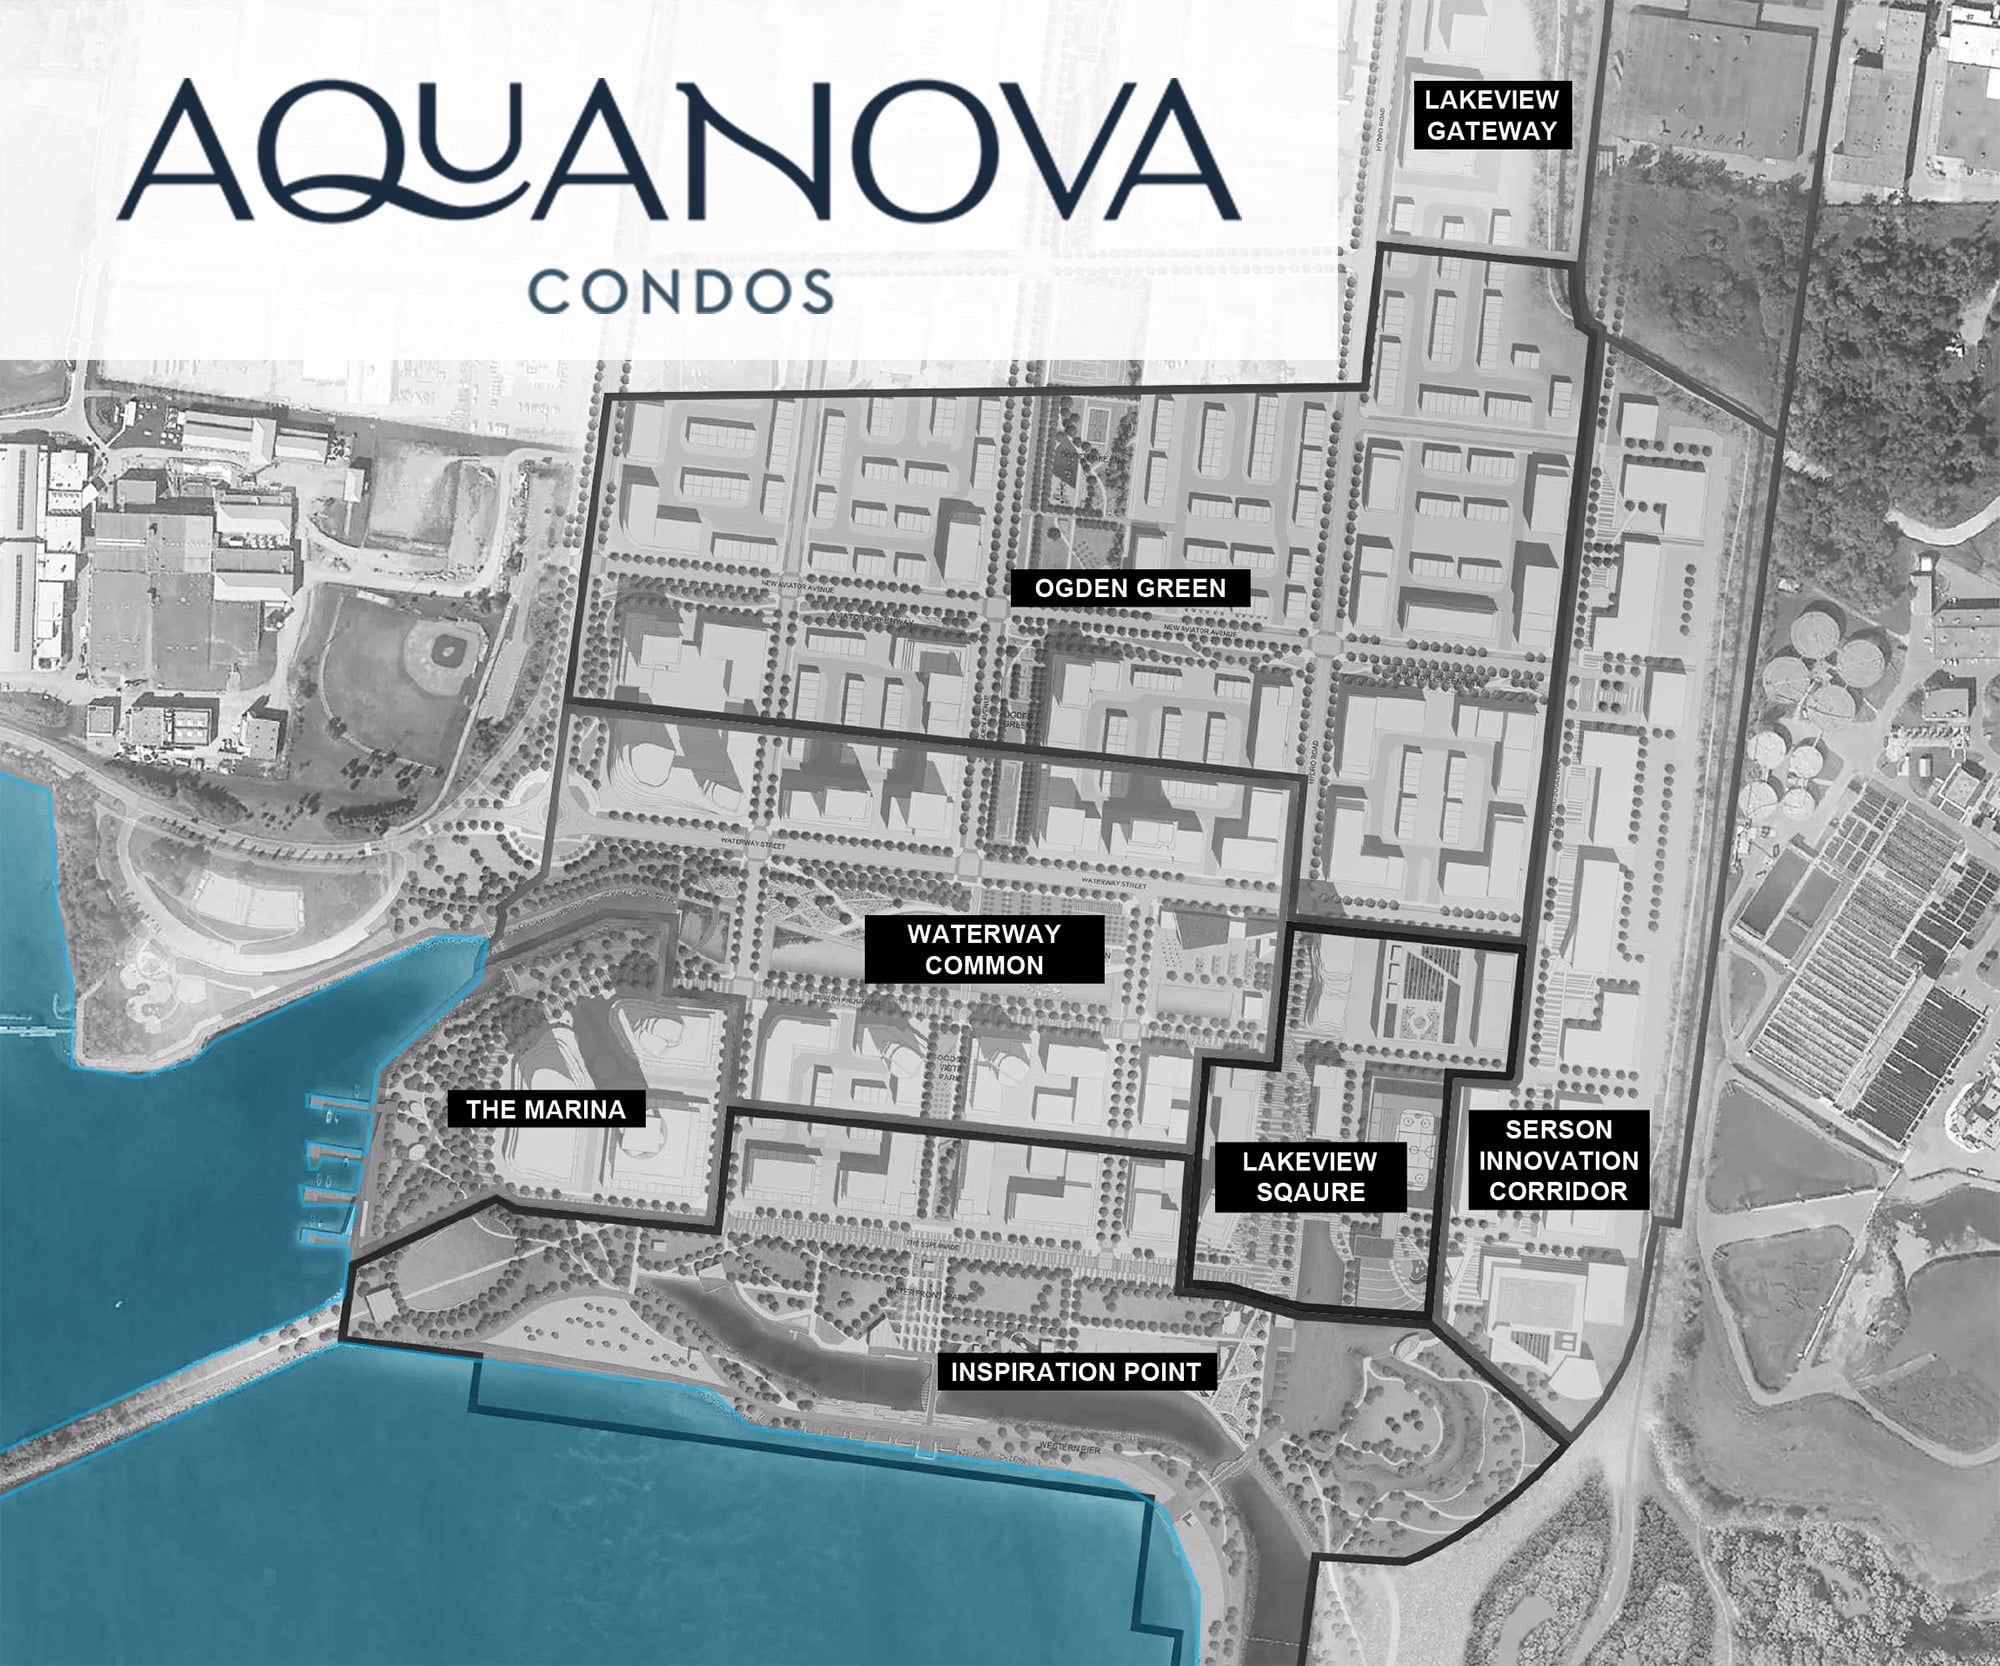 mississauga precon 2022 Mississauga Precon 2022 Launches aquanova condos mississauga lakeview greenpark hydro rd